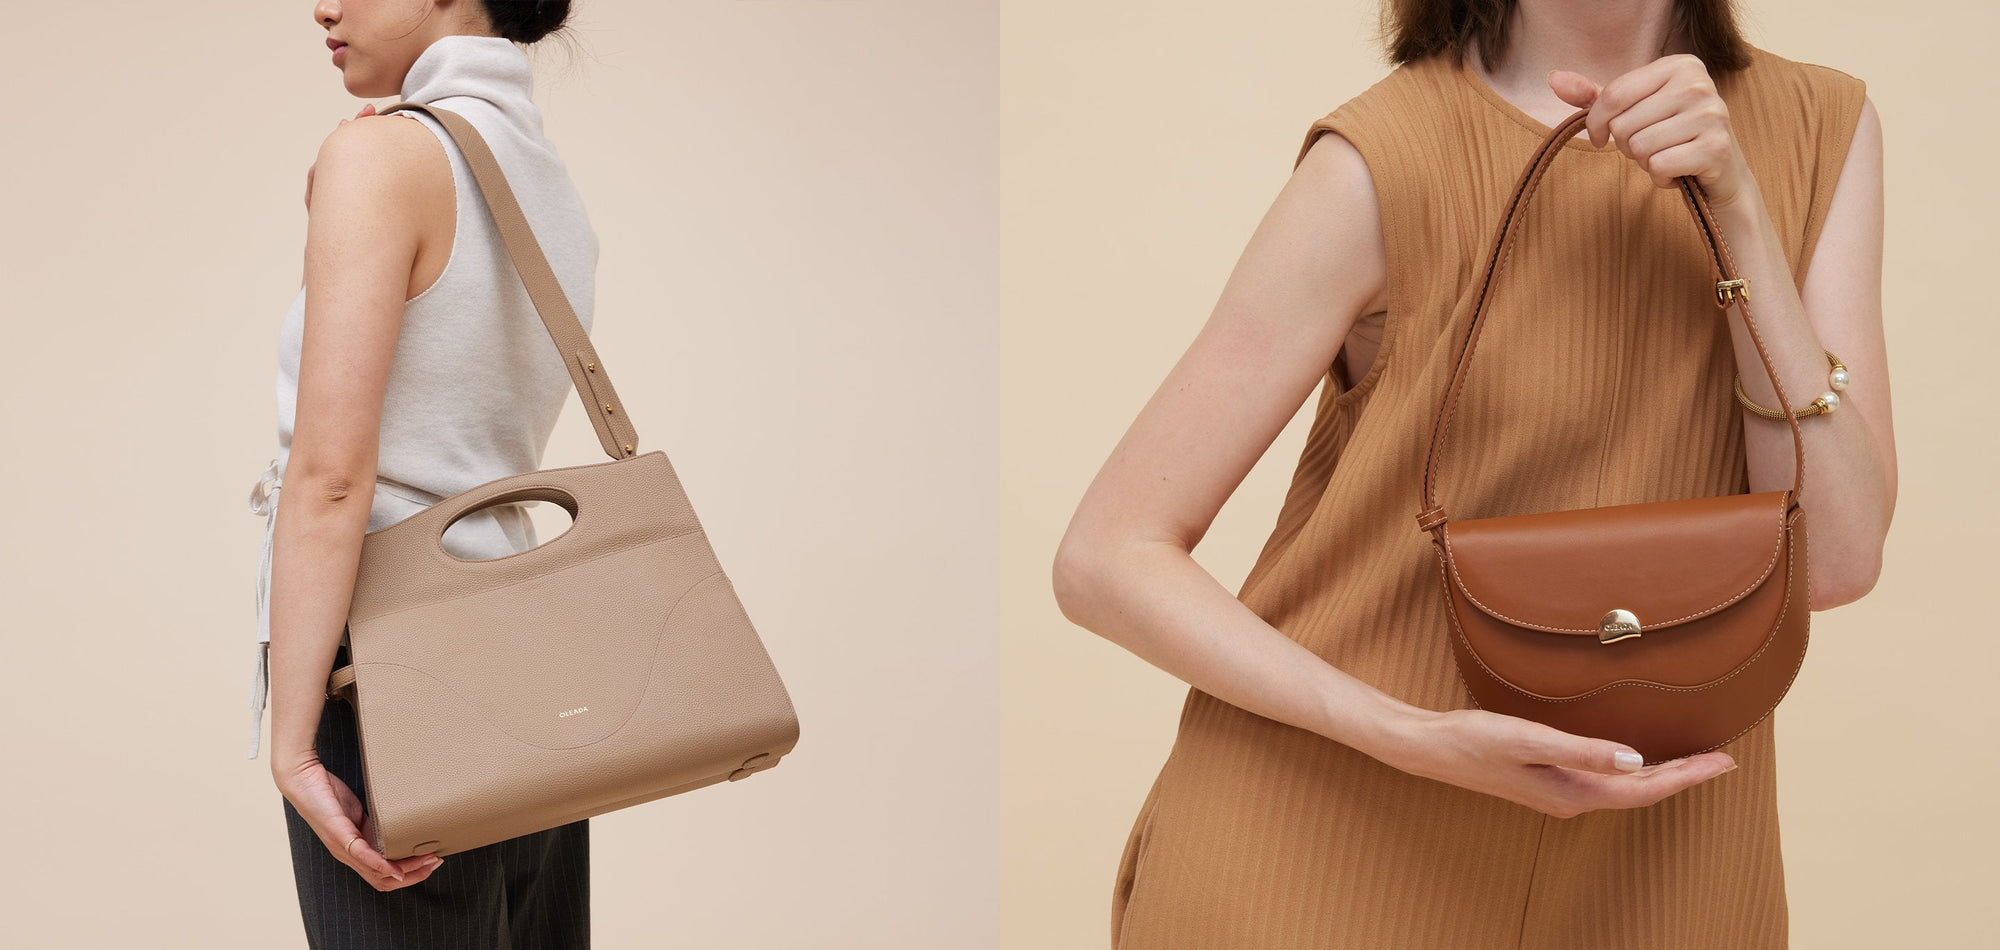 Elegant shoulder bags for women